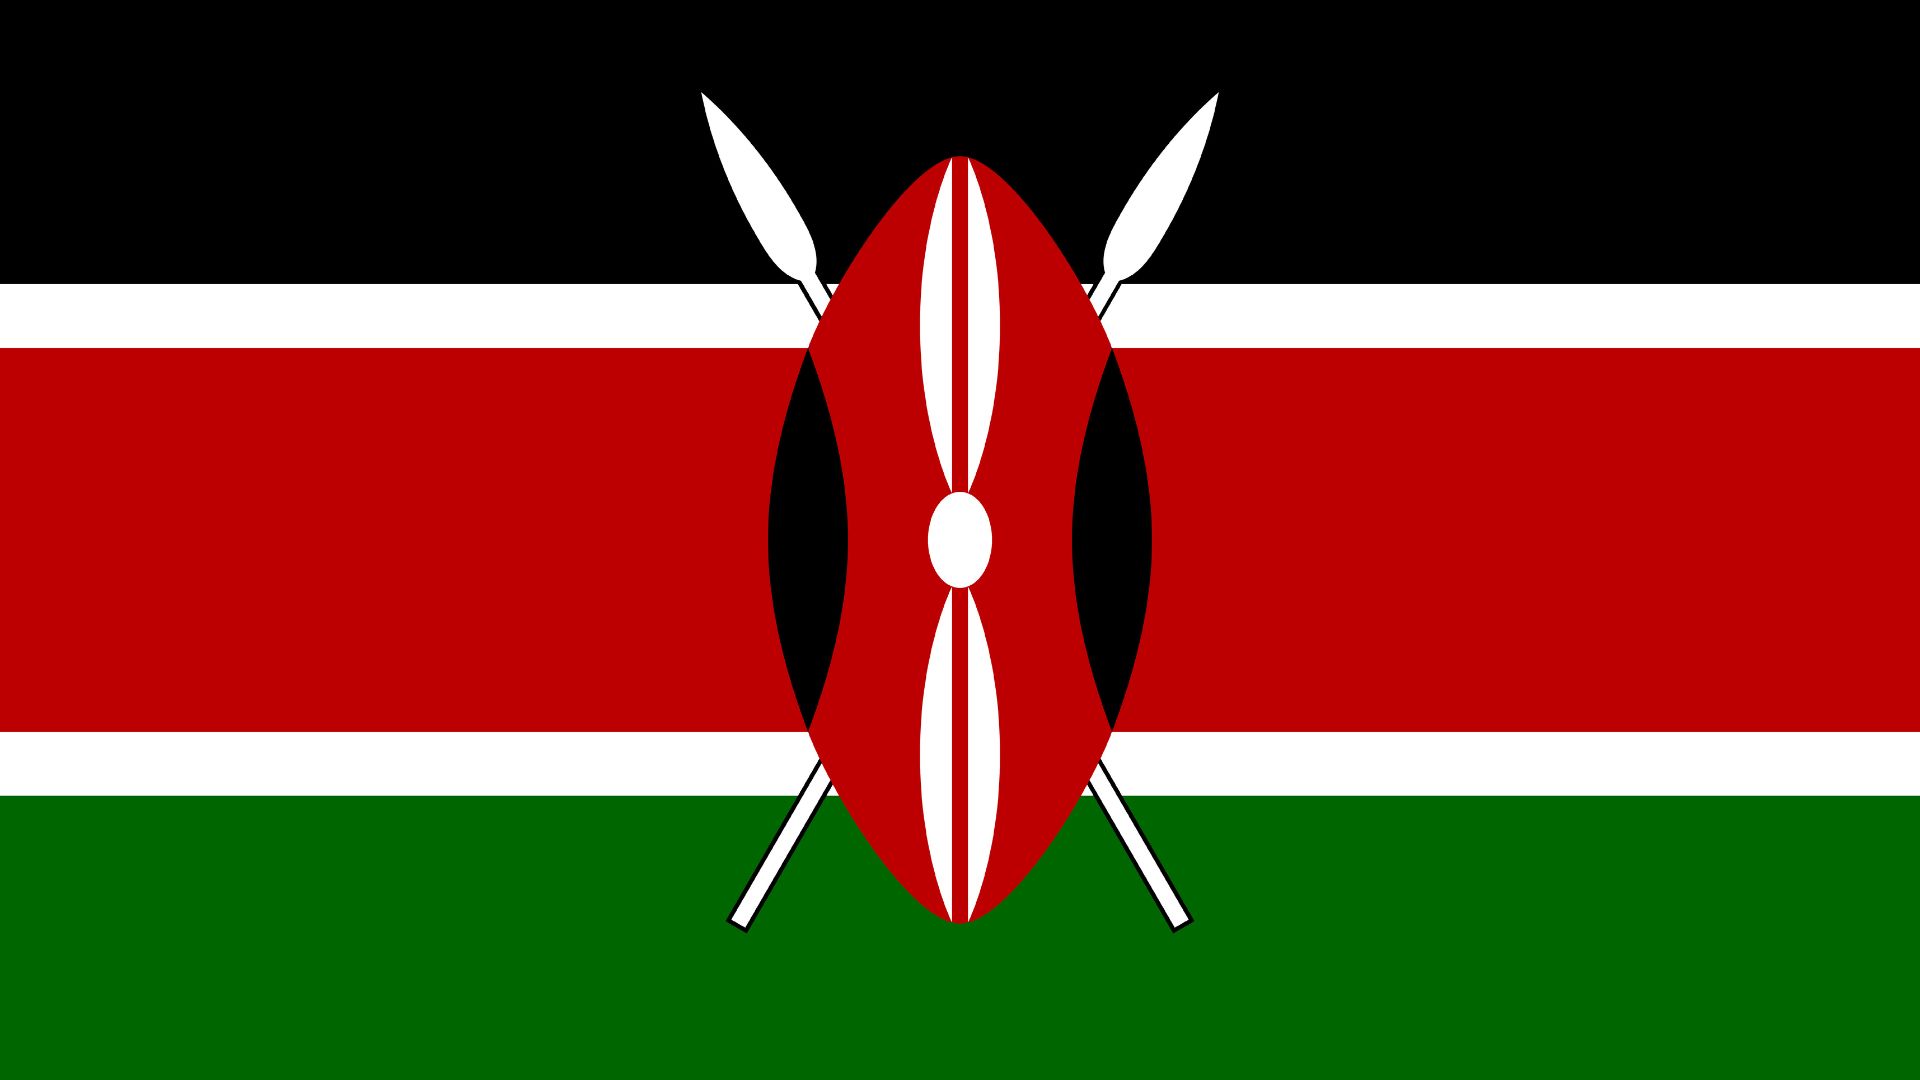 A Bandeira do Quênia possui como símbolo um escudo cruzado por duas lanças e é composta pelas cores: preto, vermelho, verde e branco.